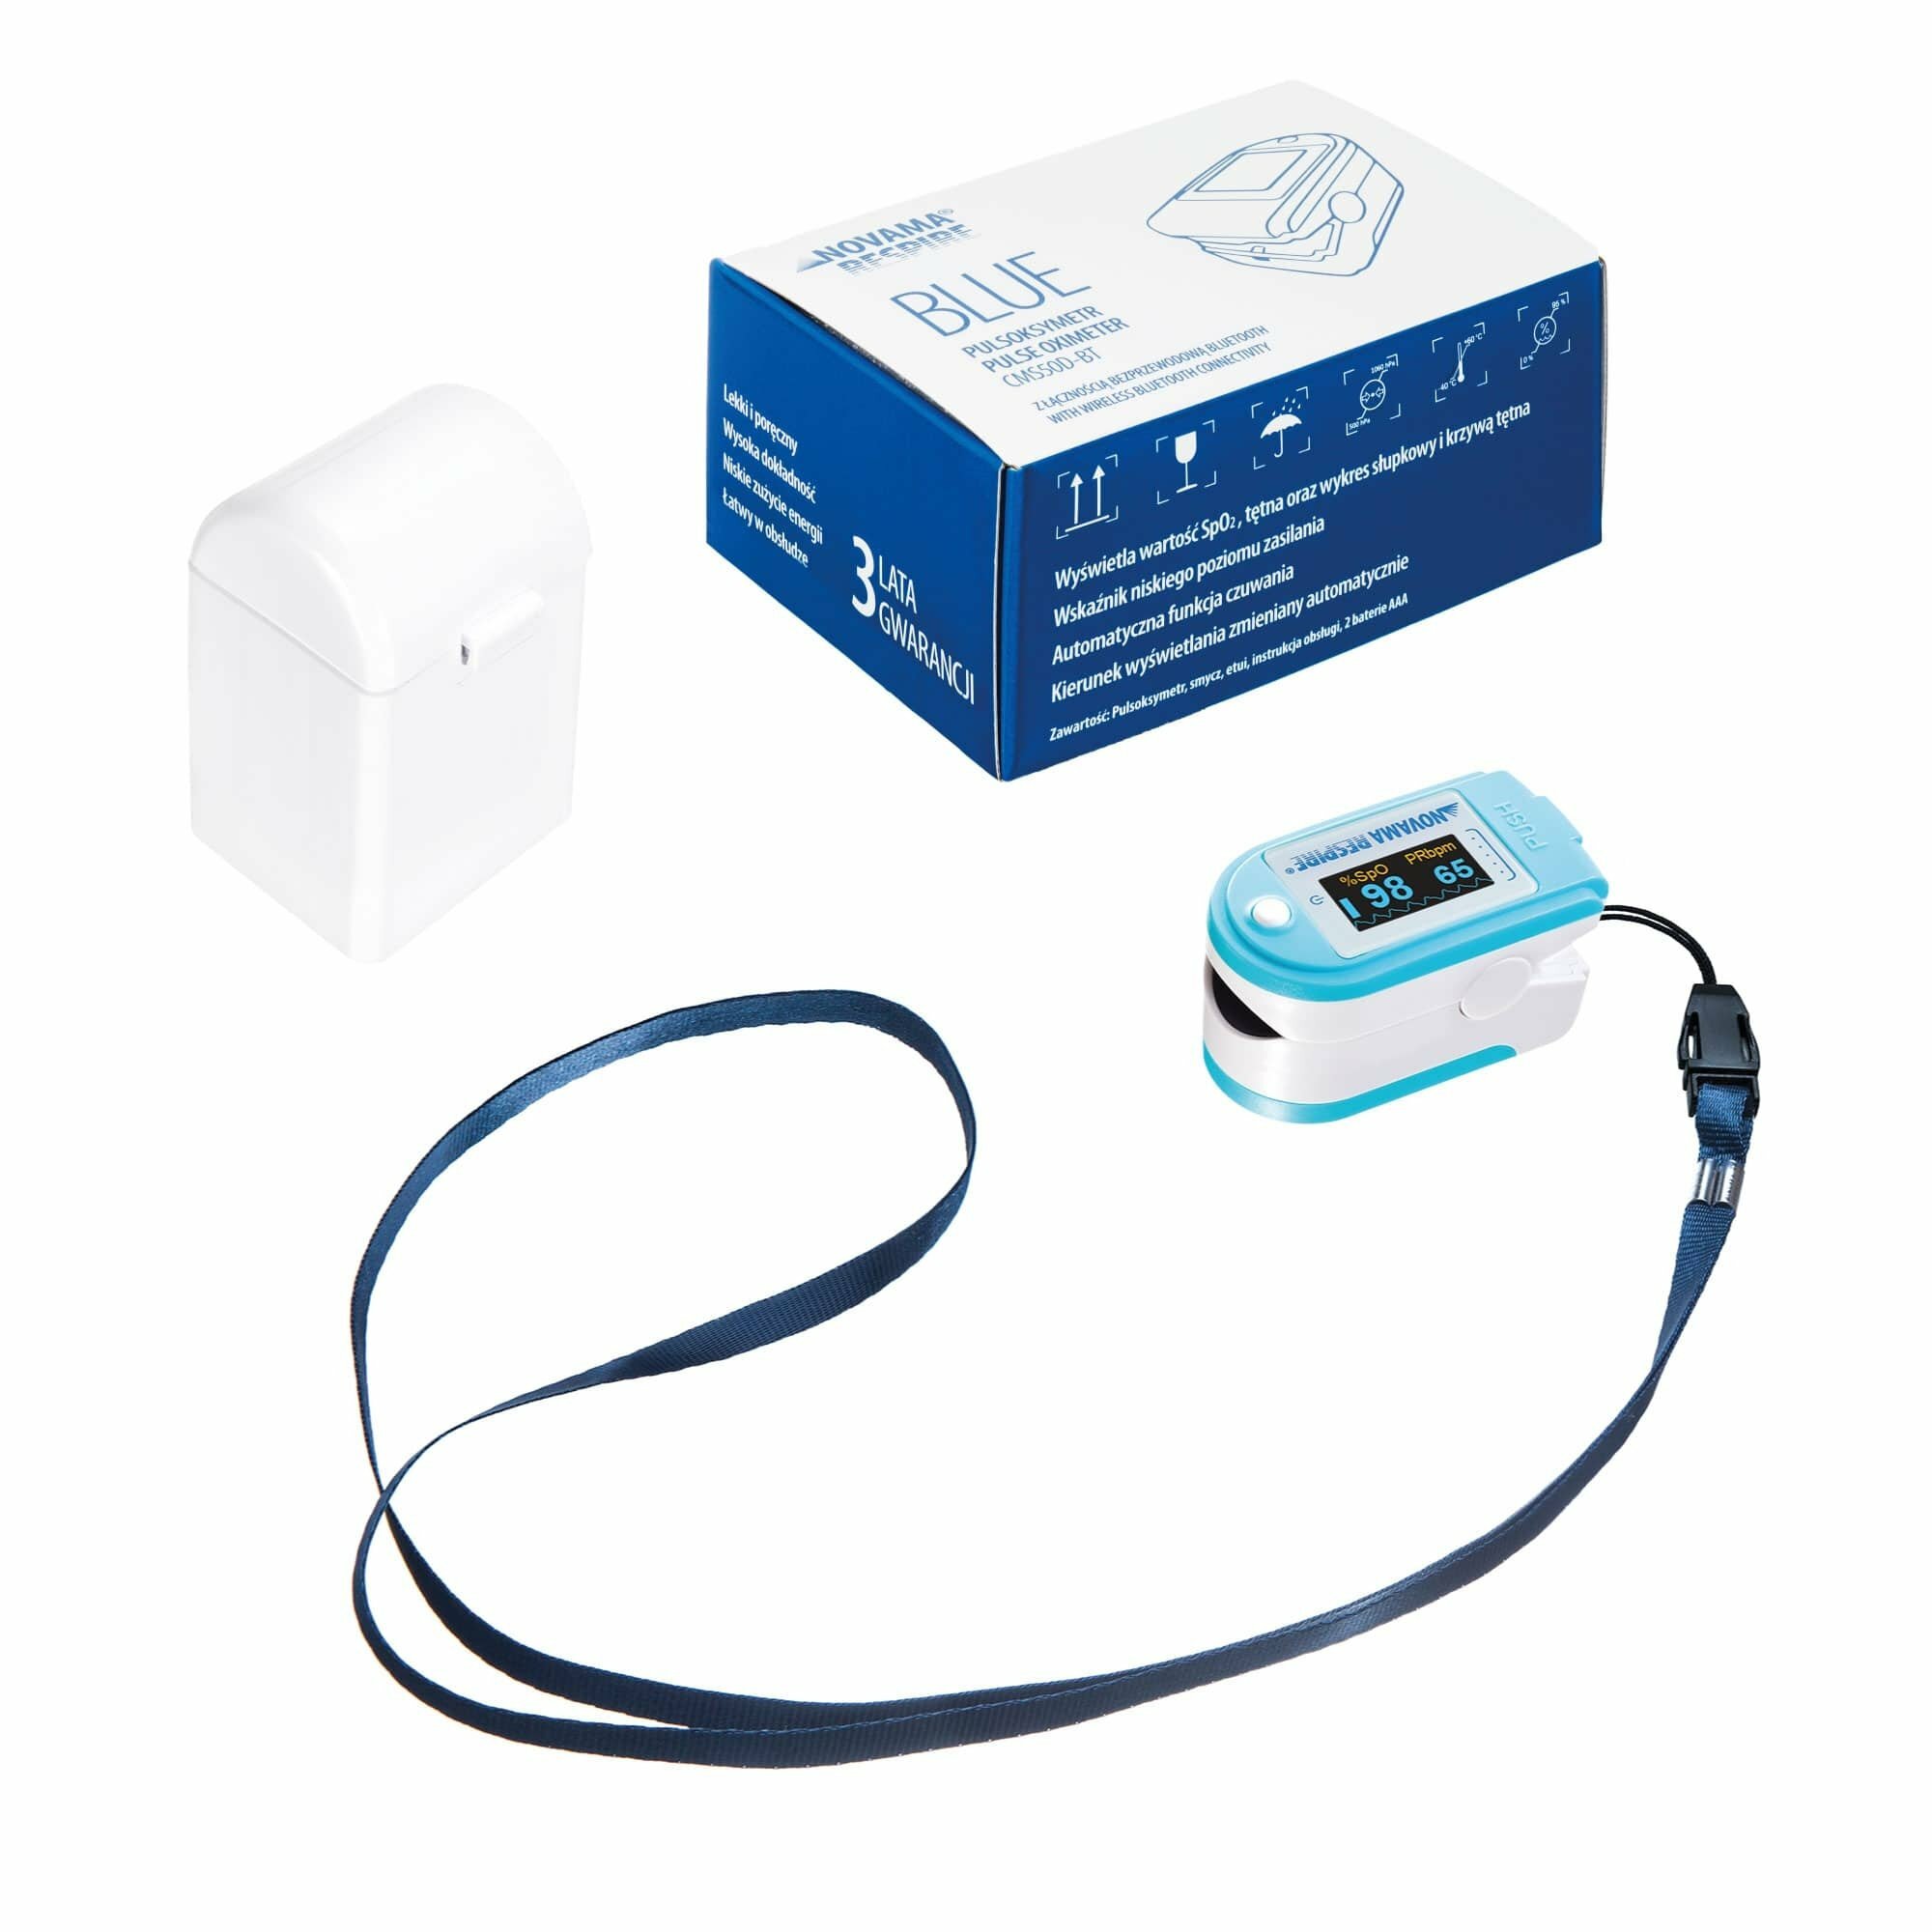 NOVAMA RESPIRE BLUE CMS50D-BT Pulzný oxymeter s Bluetooth